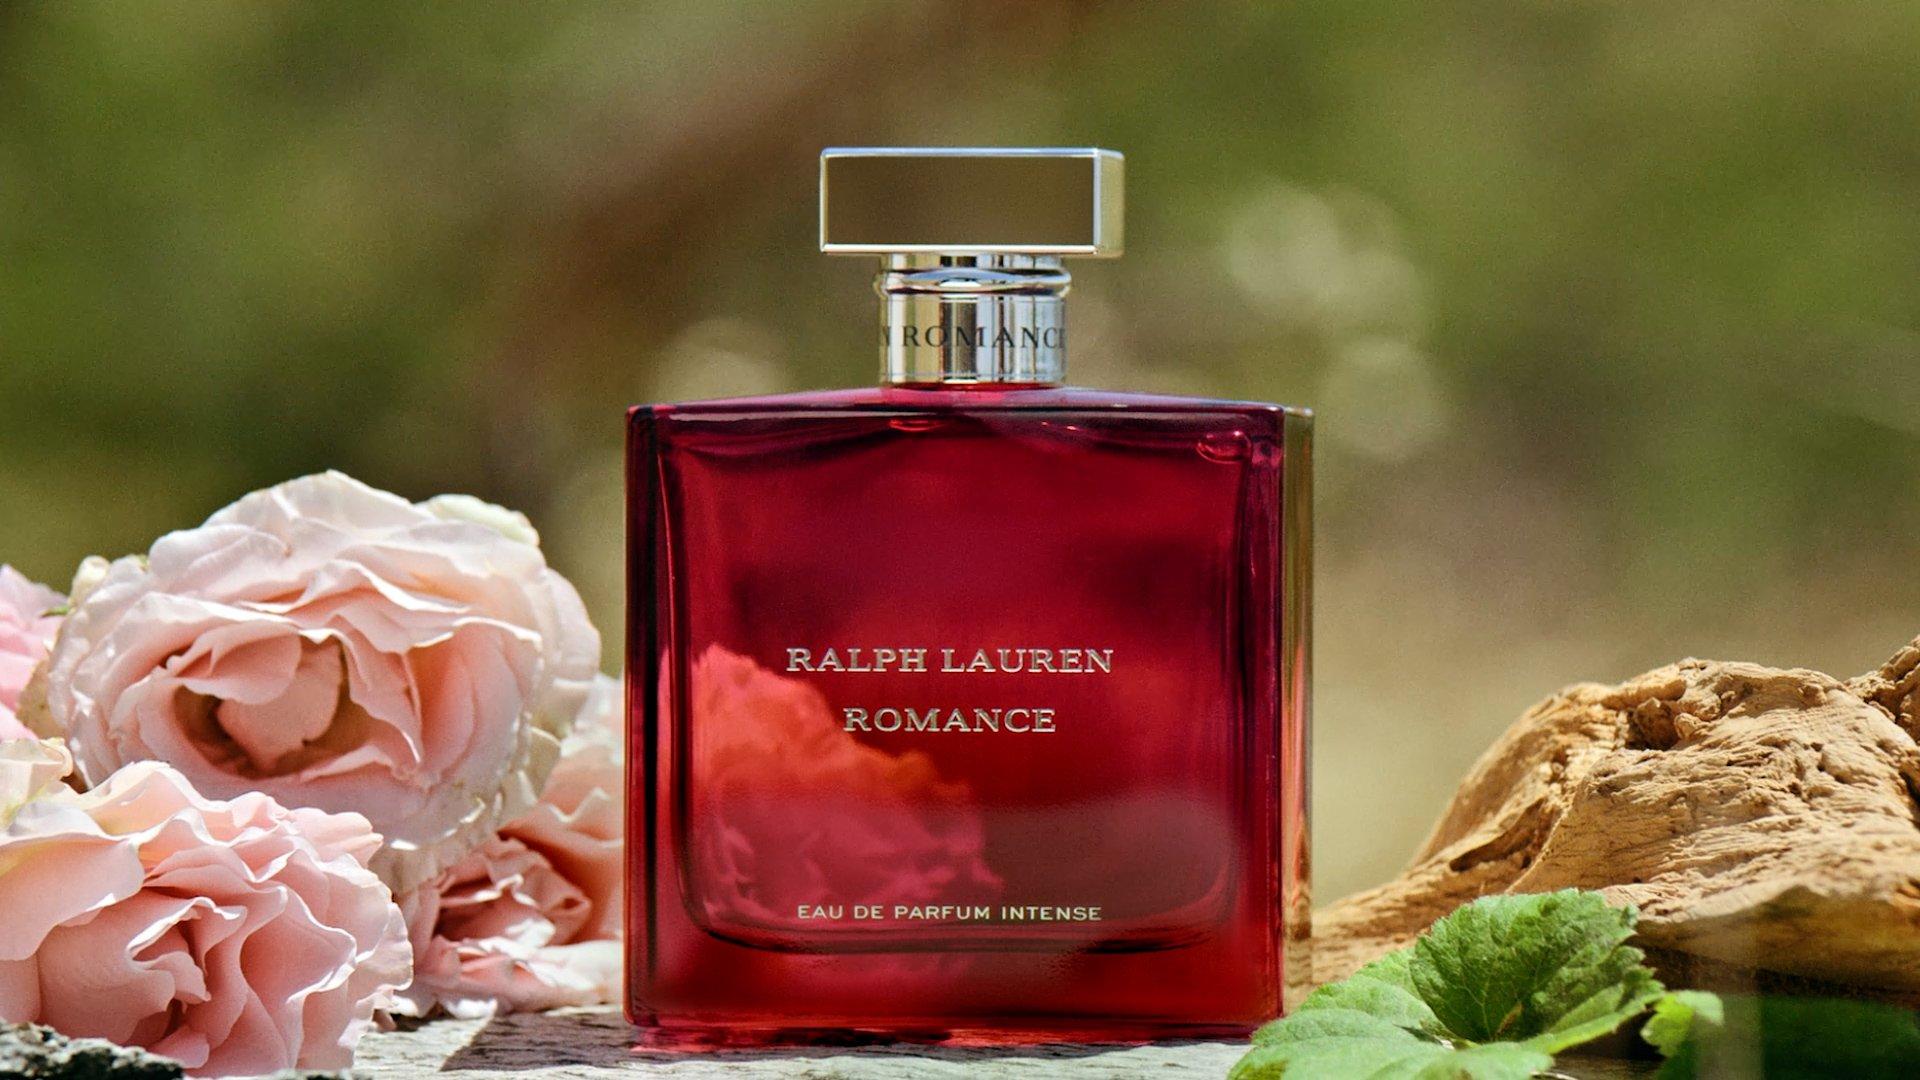 Ralph Lauren - Romance Eau de Parfum Intense - Women's Perfume